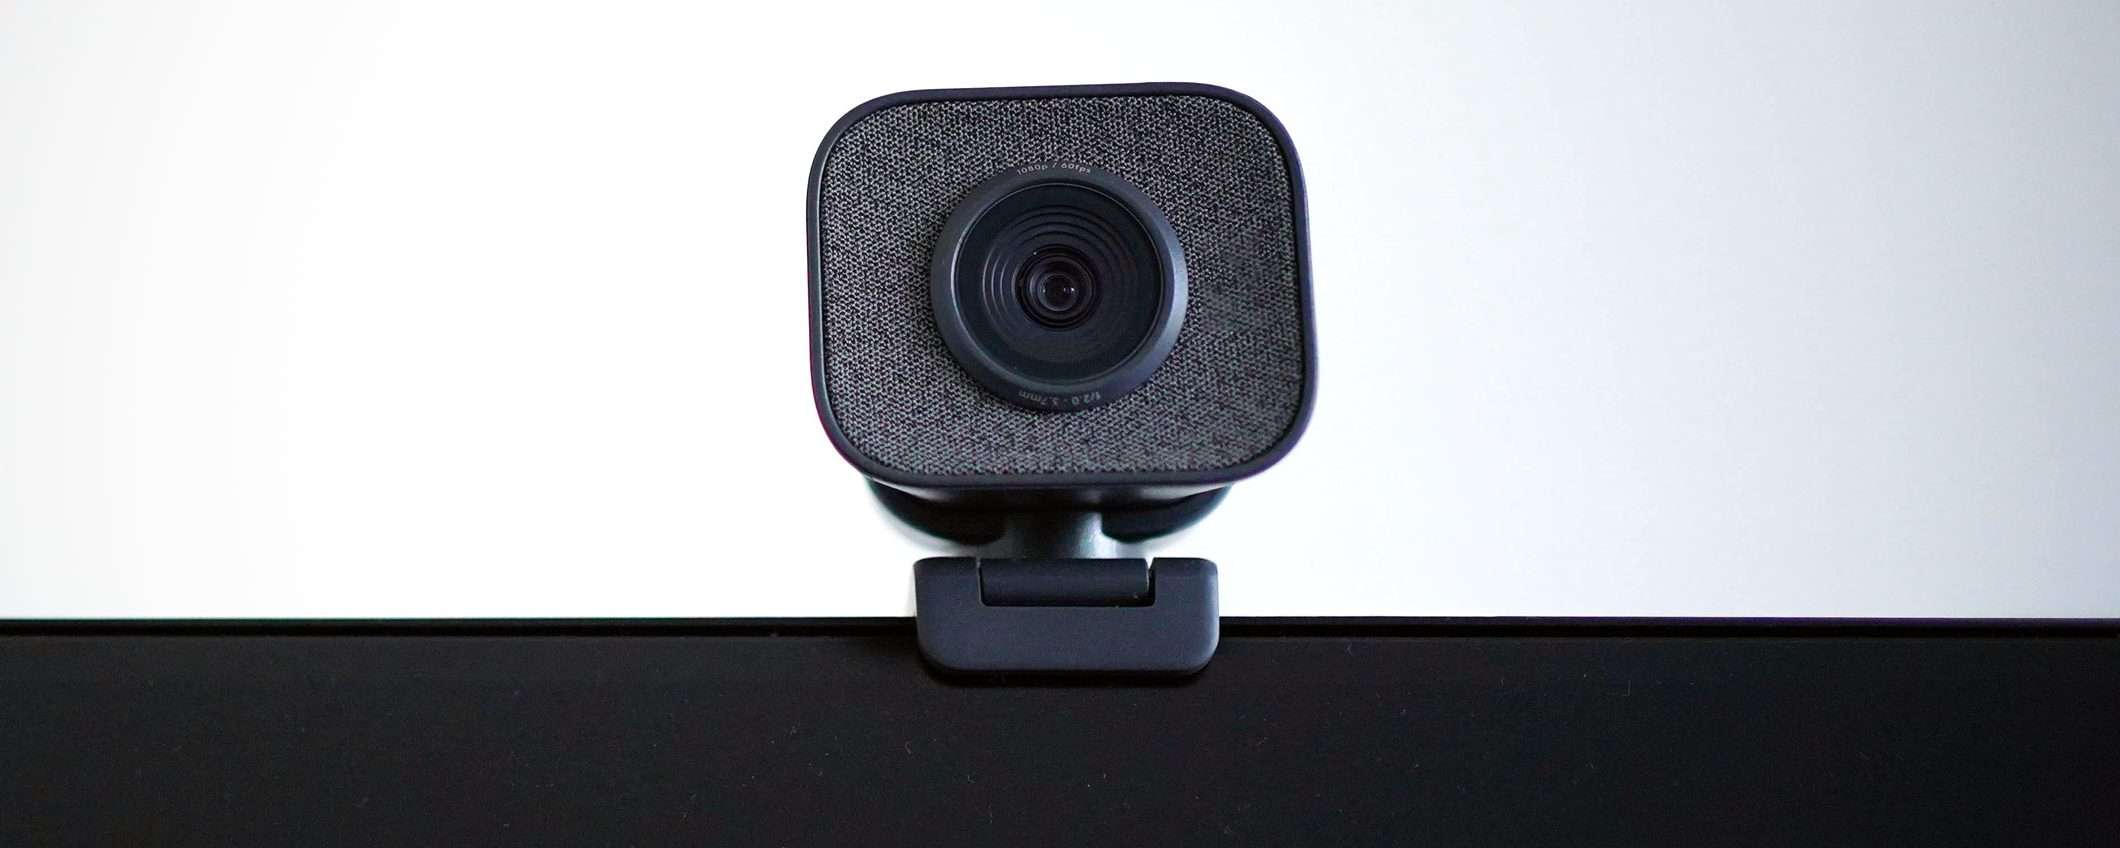 Coprire la webcam quando non in uso serve davvero?